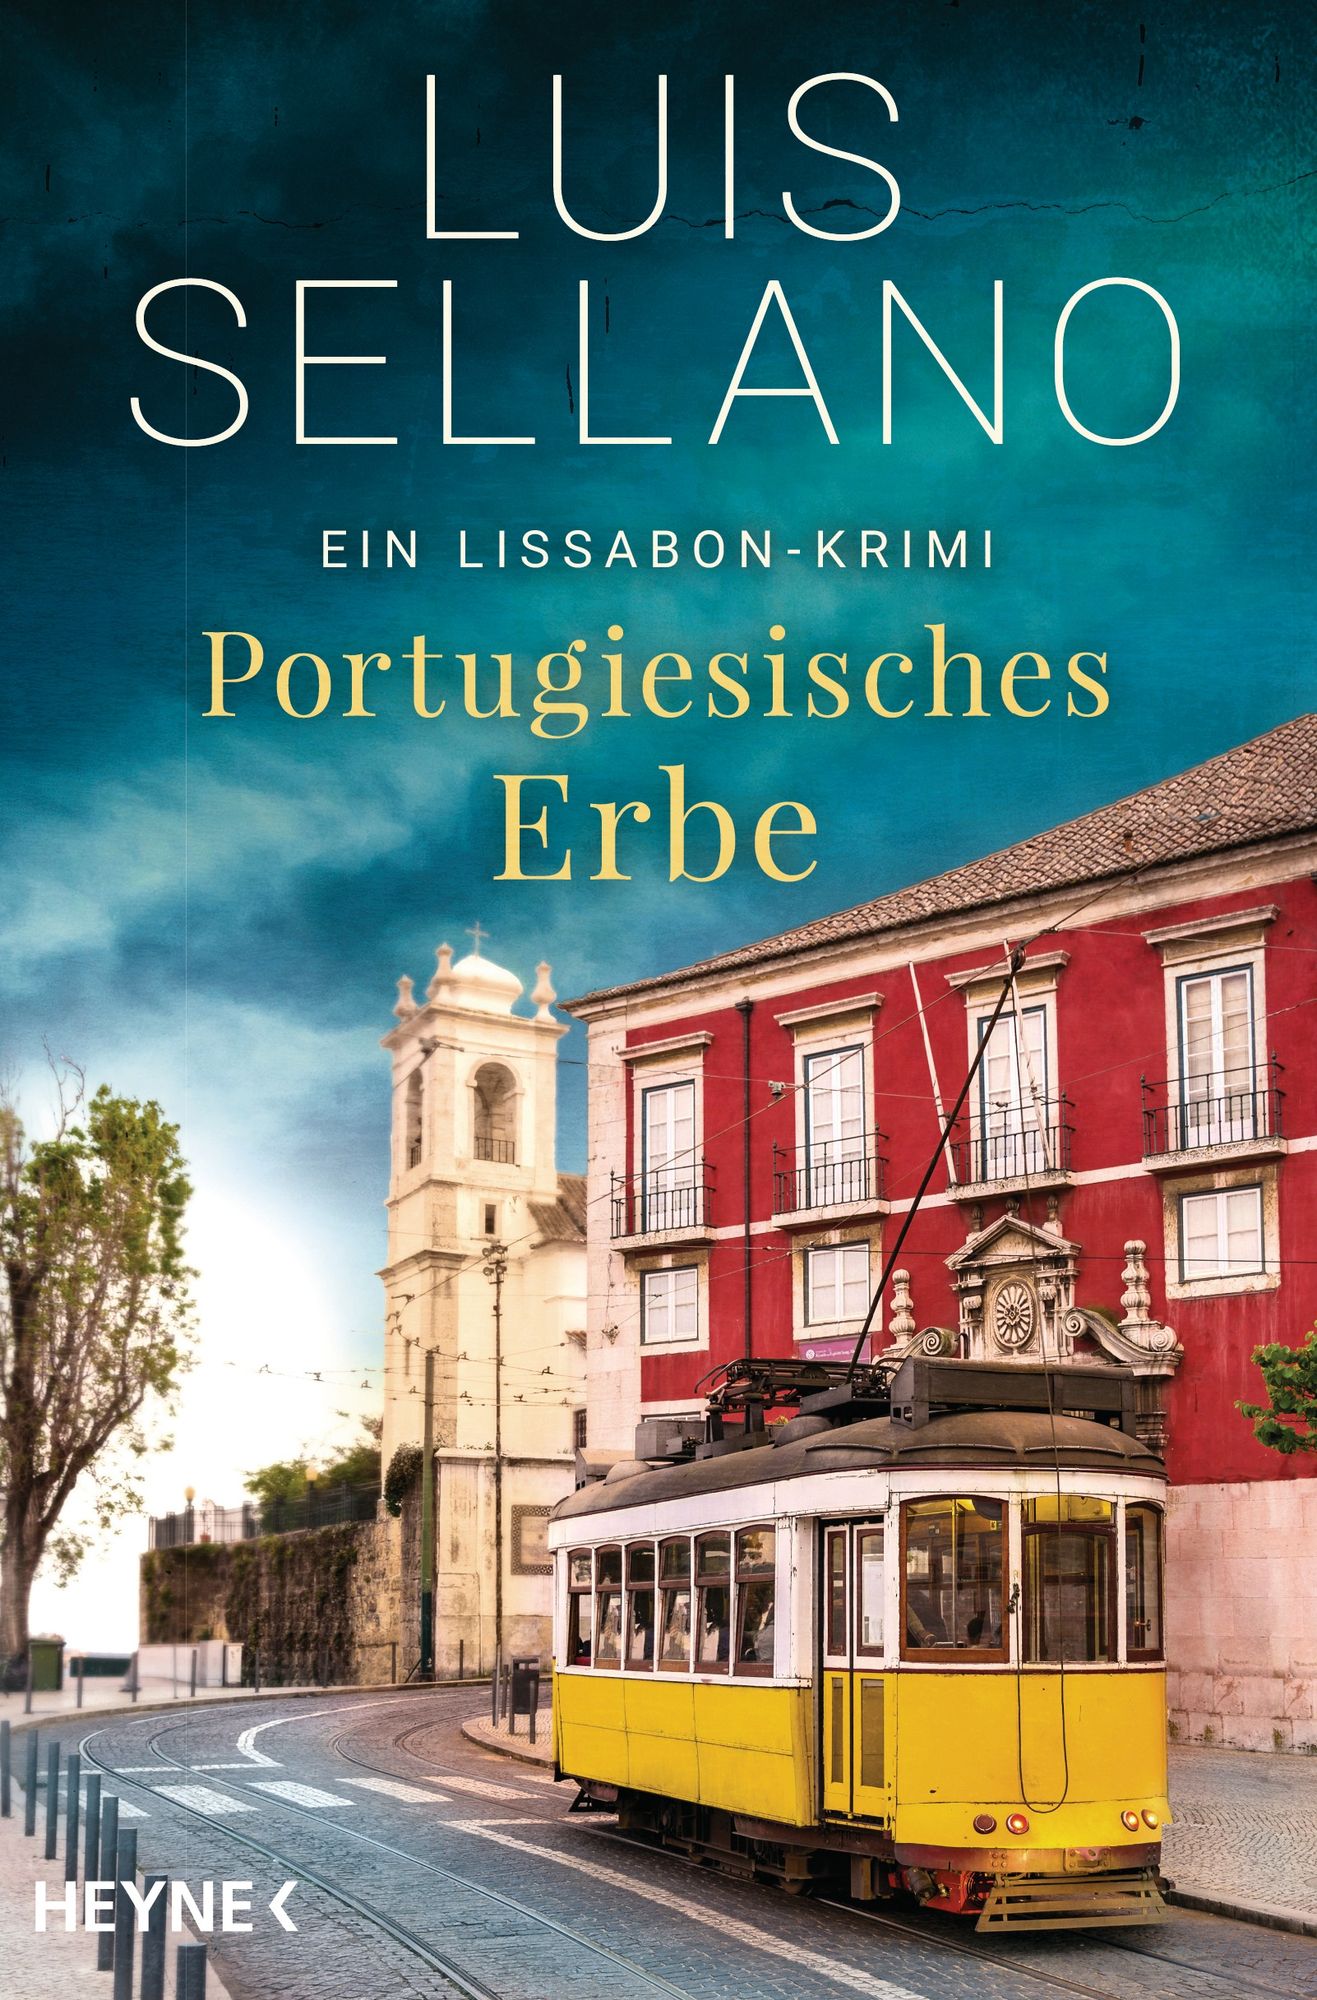 Luis Sellano: Portugiesisches Erbe, ein Lissabon-Krimi